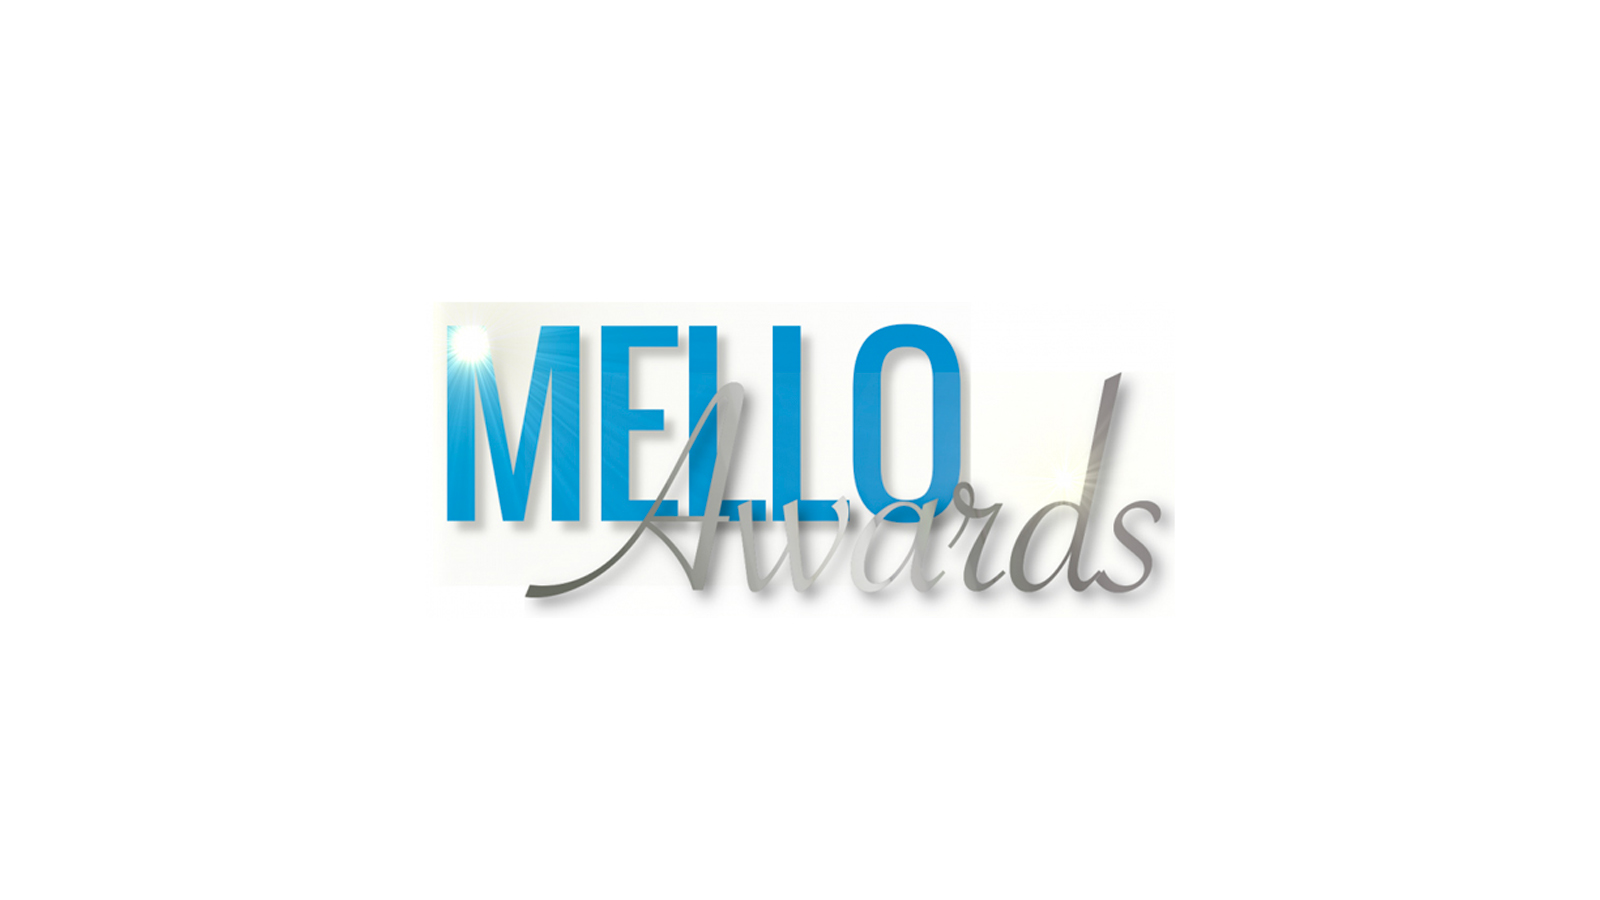 Eagle Eye CFO nominated for Mello Award